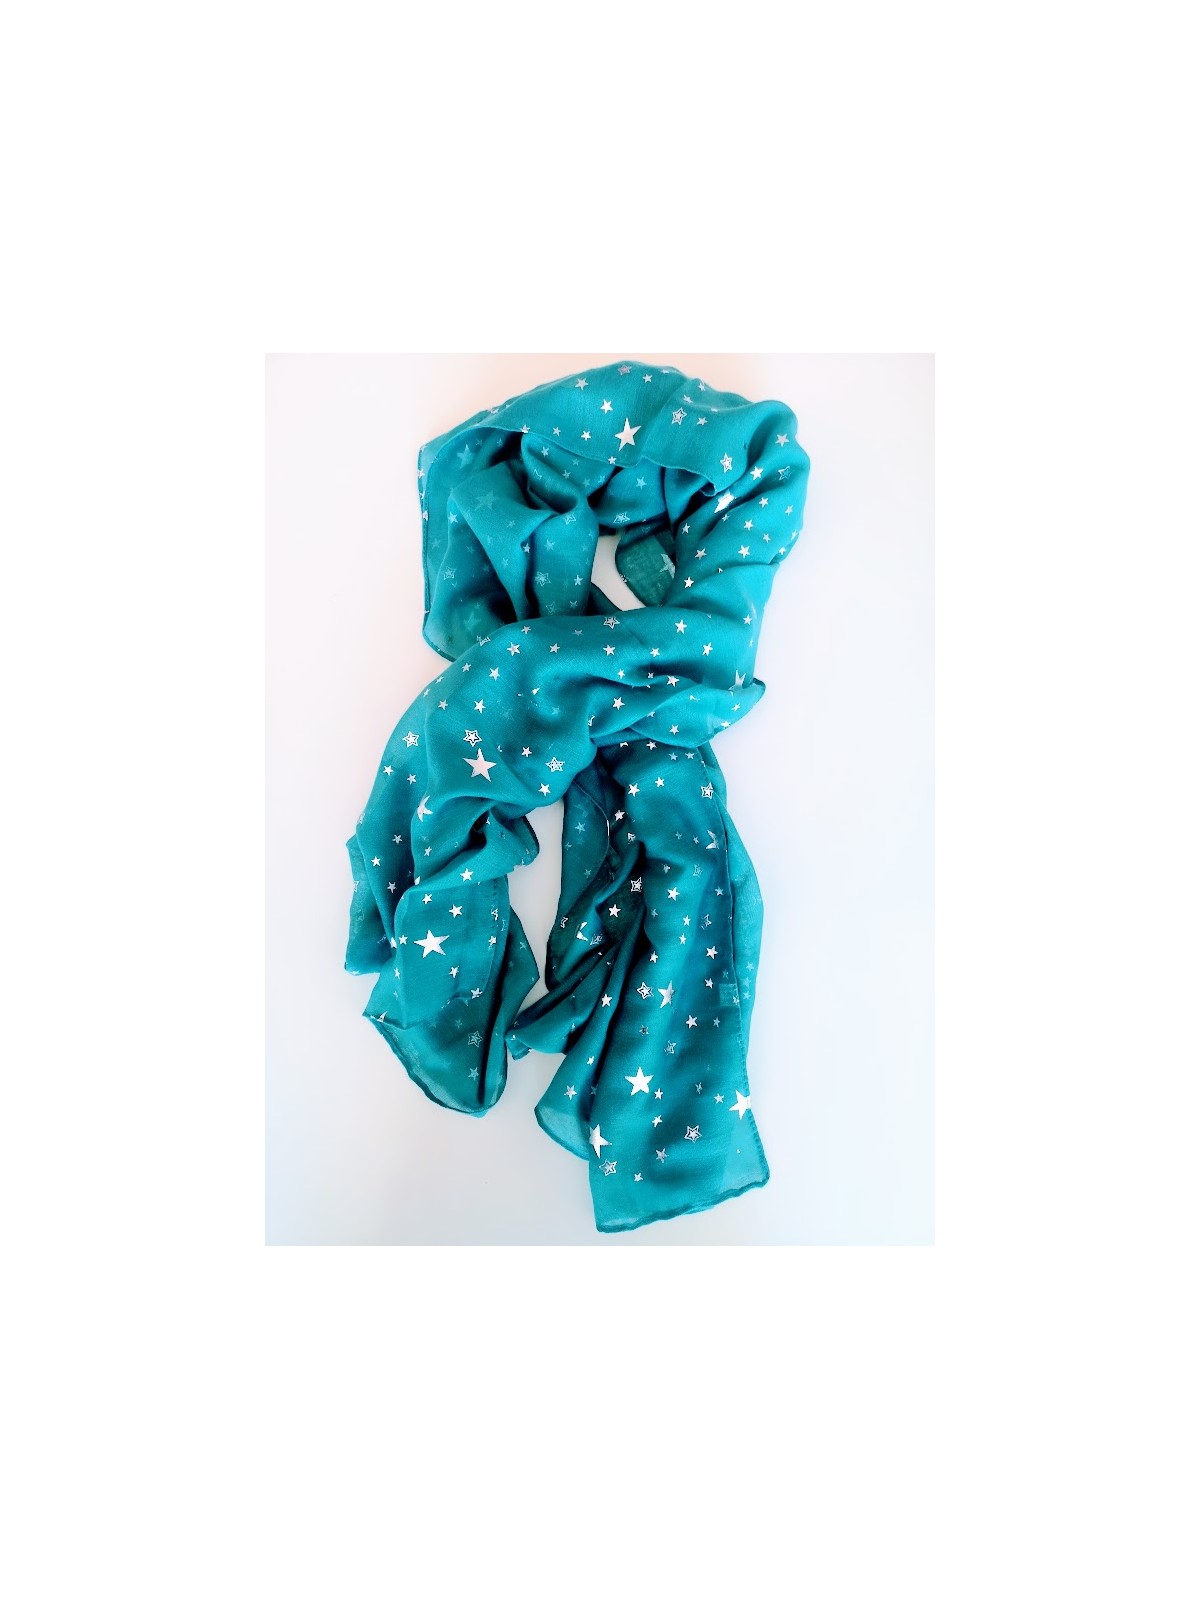 Foulard bleu canard motifs étoiles l 1 vue entier l Tilleulmenthe mode boutique de vêtements femme en ligne